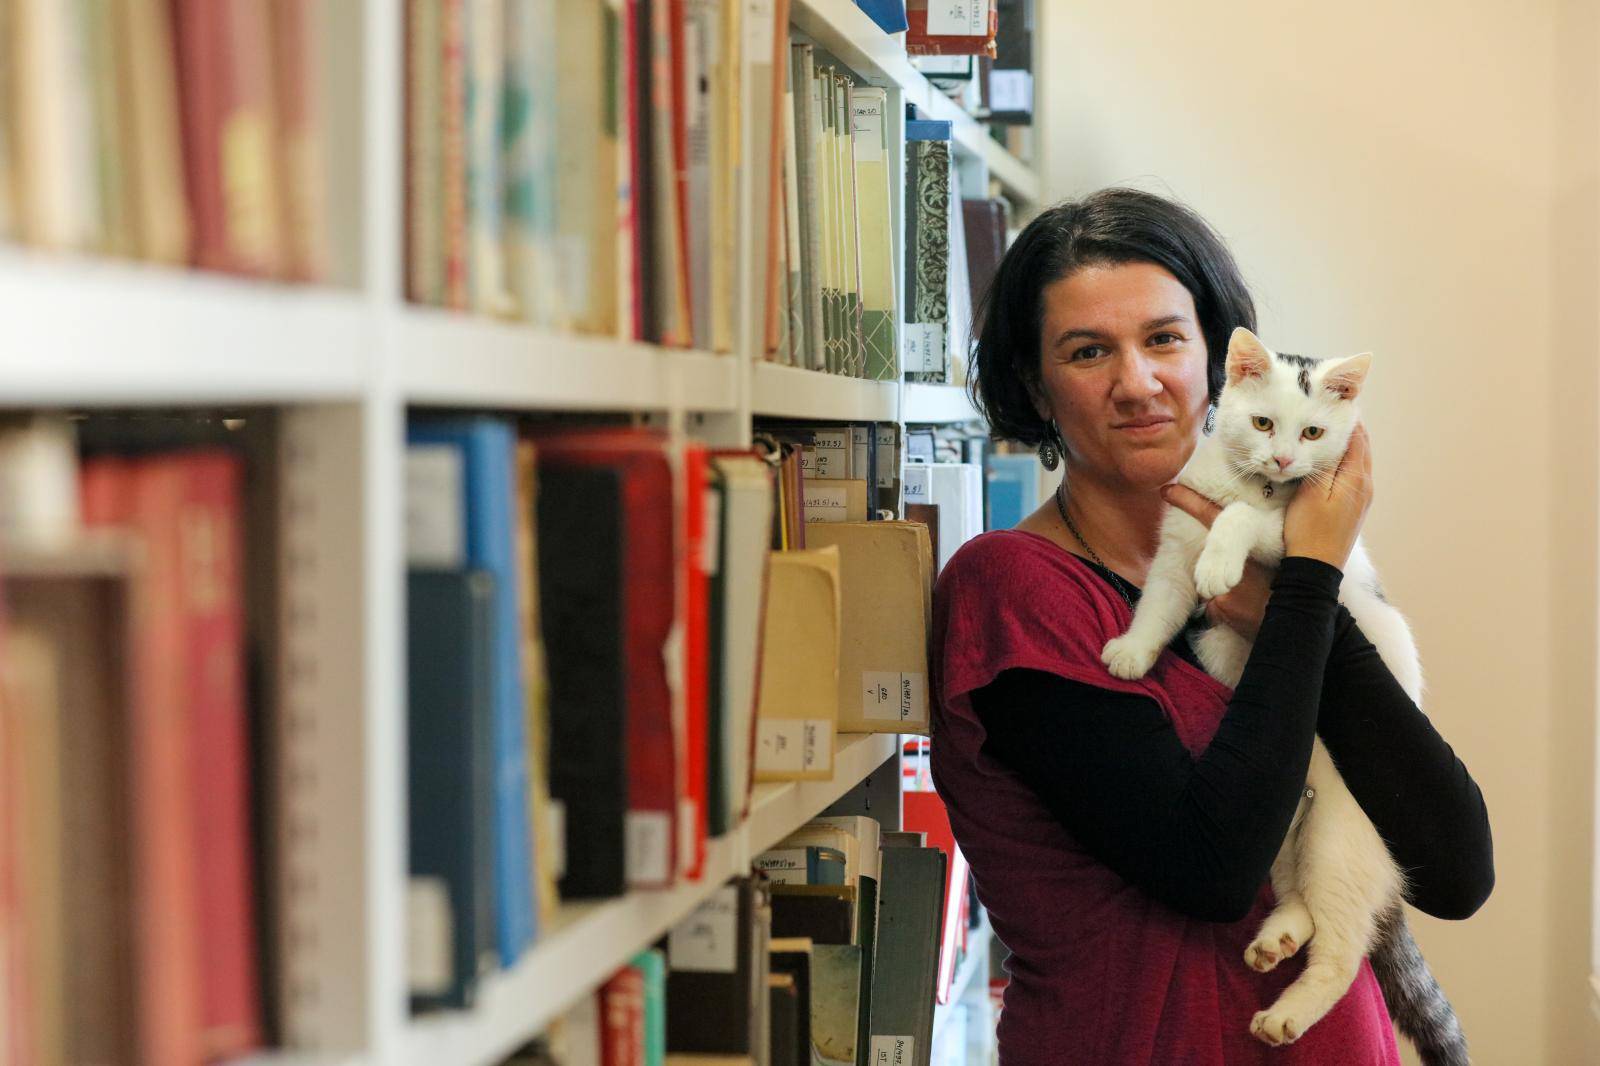 Čupavi knjižničar u Osijeku: Ja sam mačak Đivo i čuvam knjige